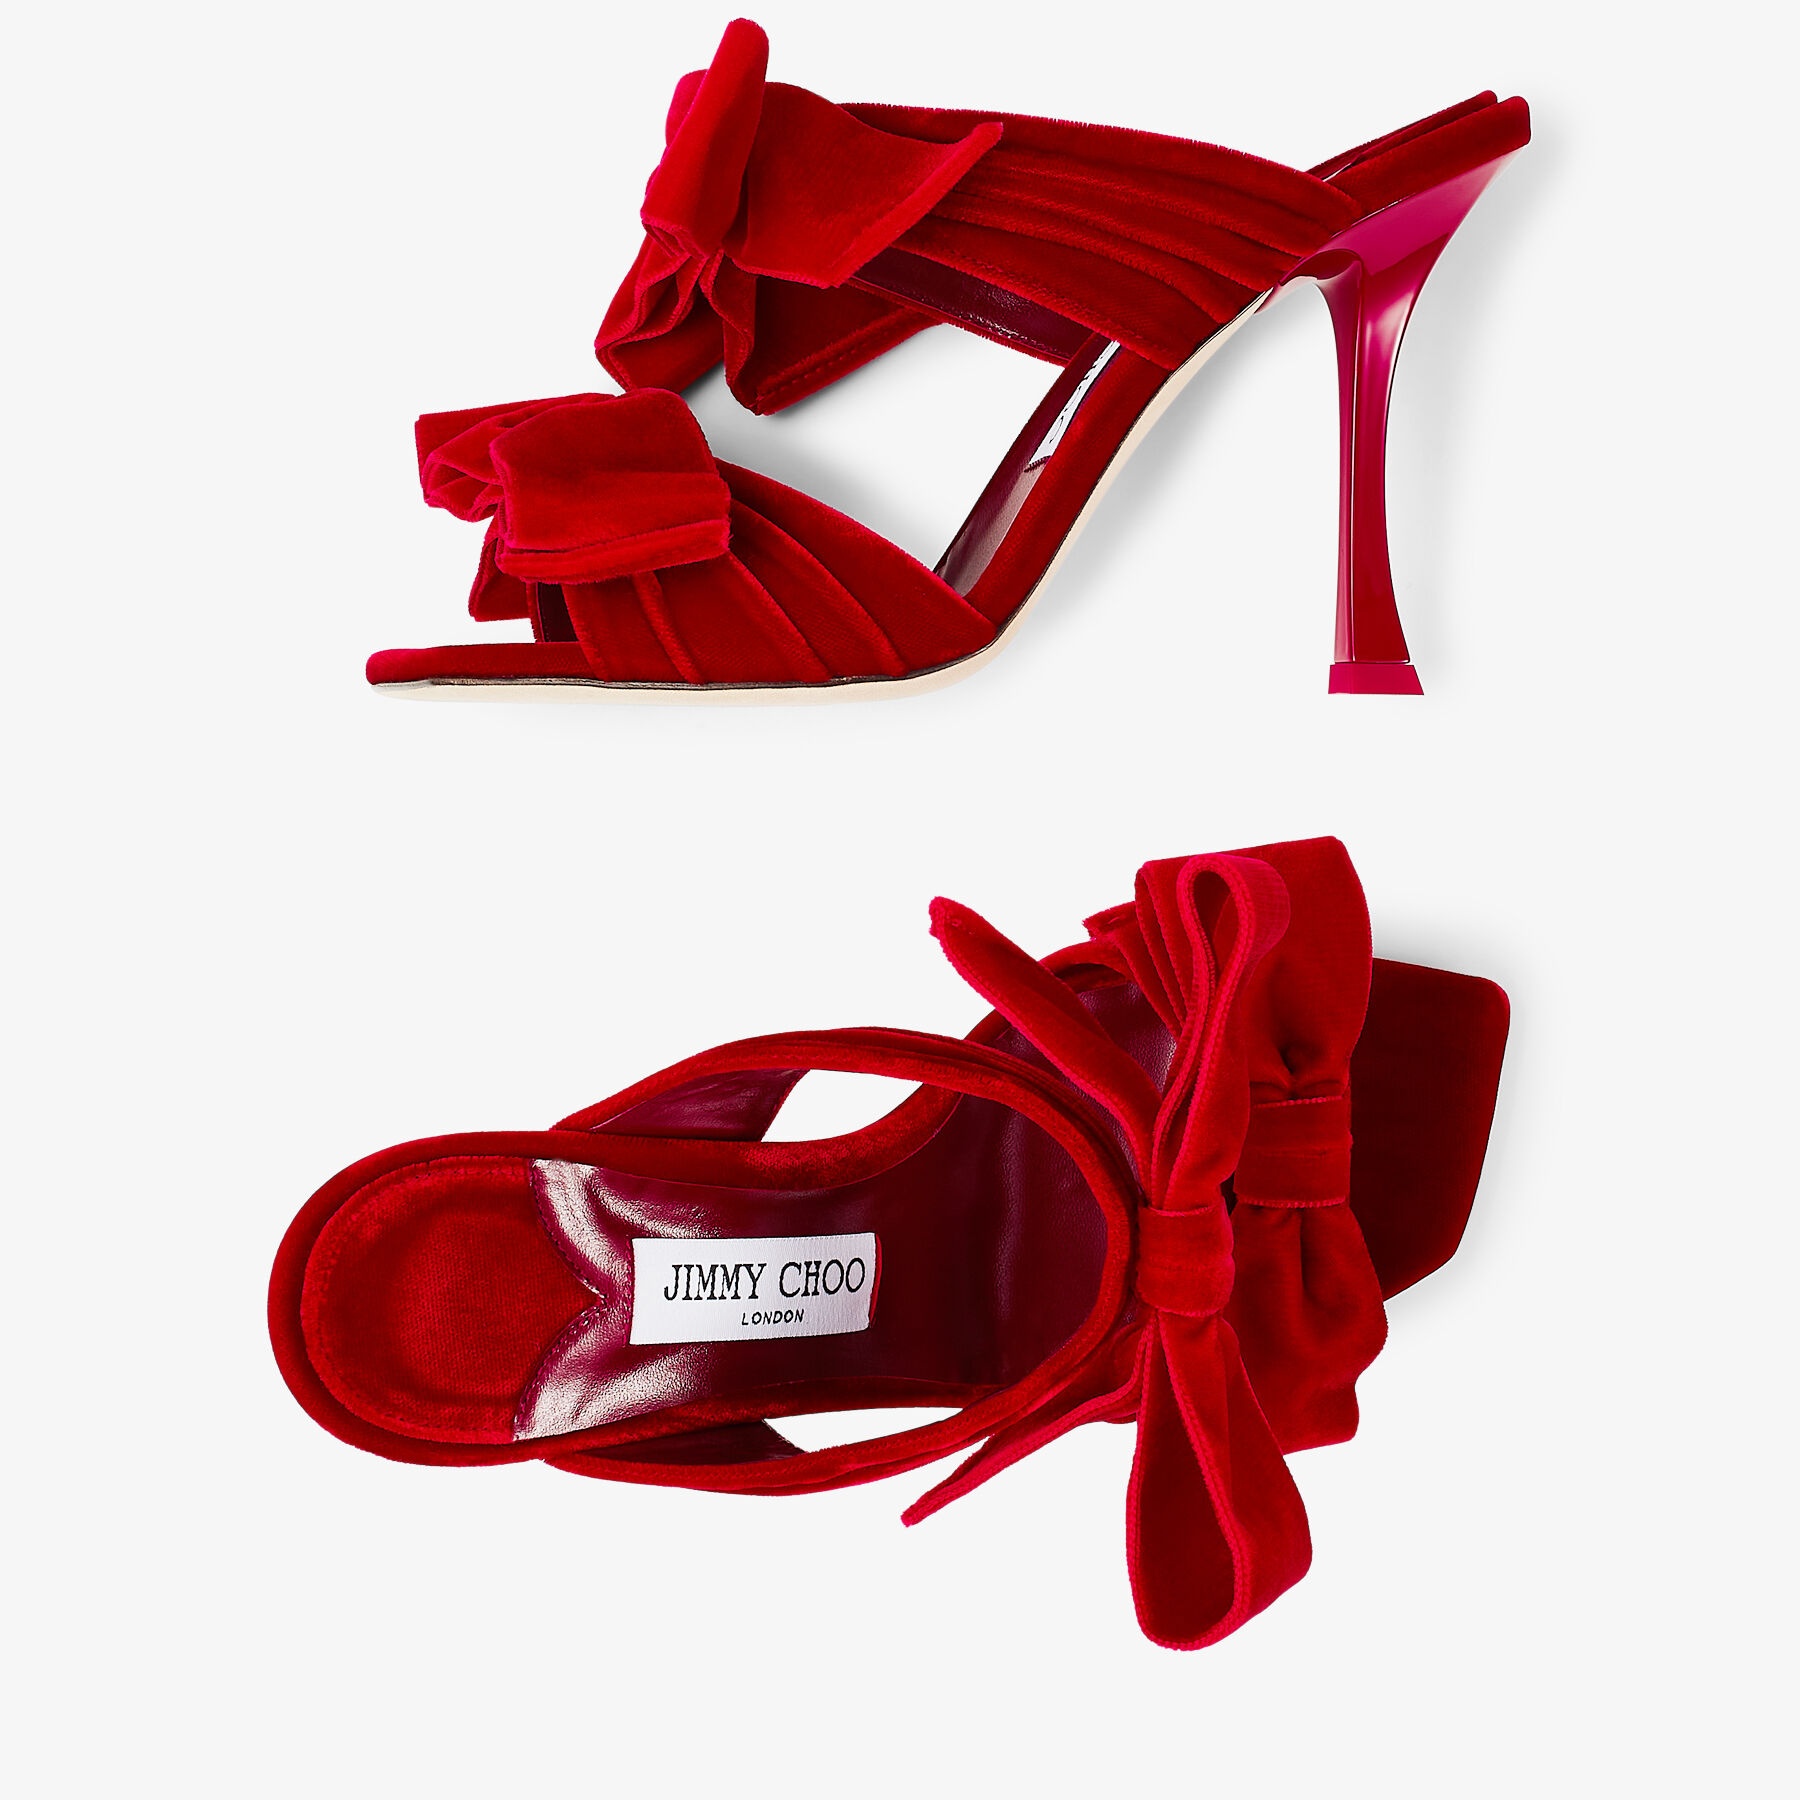 Flaca Sandal 100
Red Velvet Sandal with Bow - 5